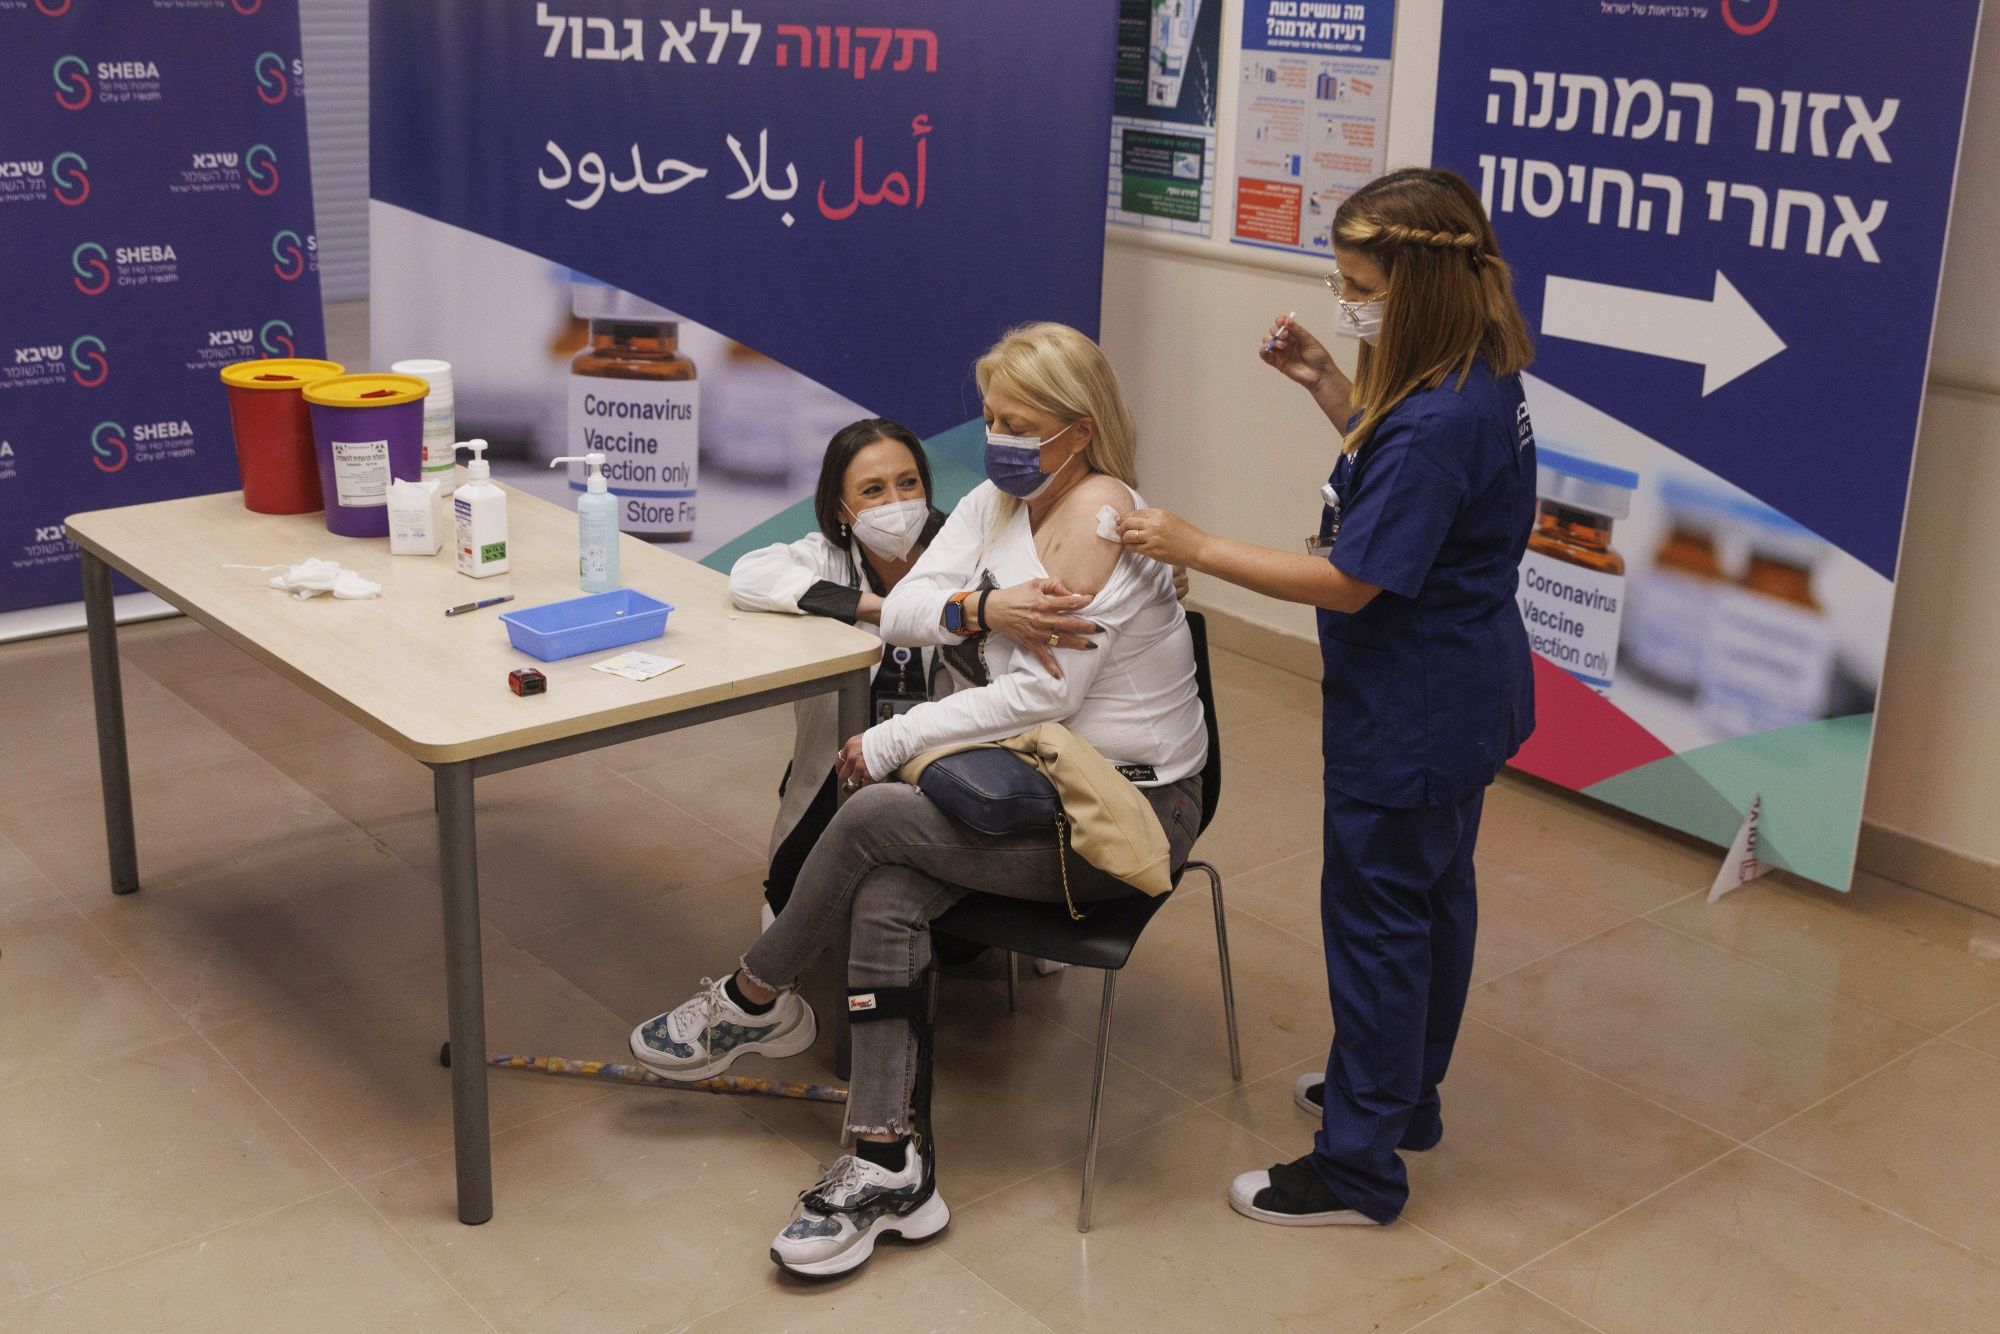 Un trabajador sanitario administra una cuarta dosis de la vacuna de Pfizer-BioNTech a un paciente en el centro médico de Sheba, en Ramat Gan, Israel, el viernes 31 de diciembre de 2021. Kobi Wolf/Bloomberg